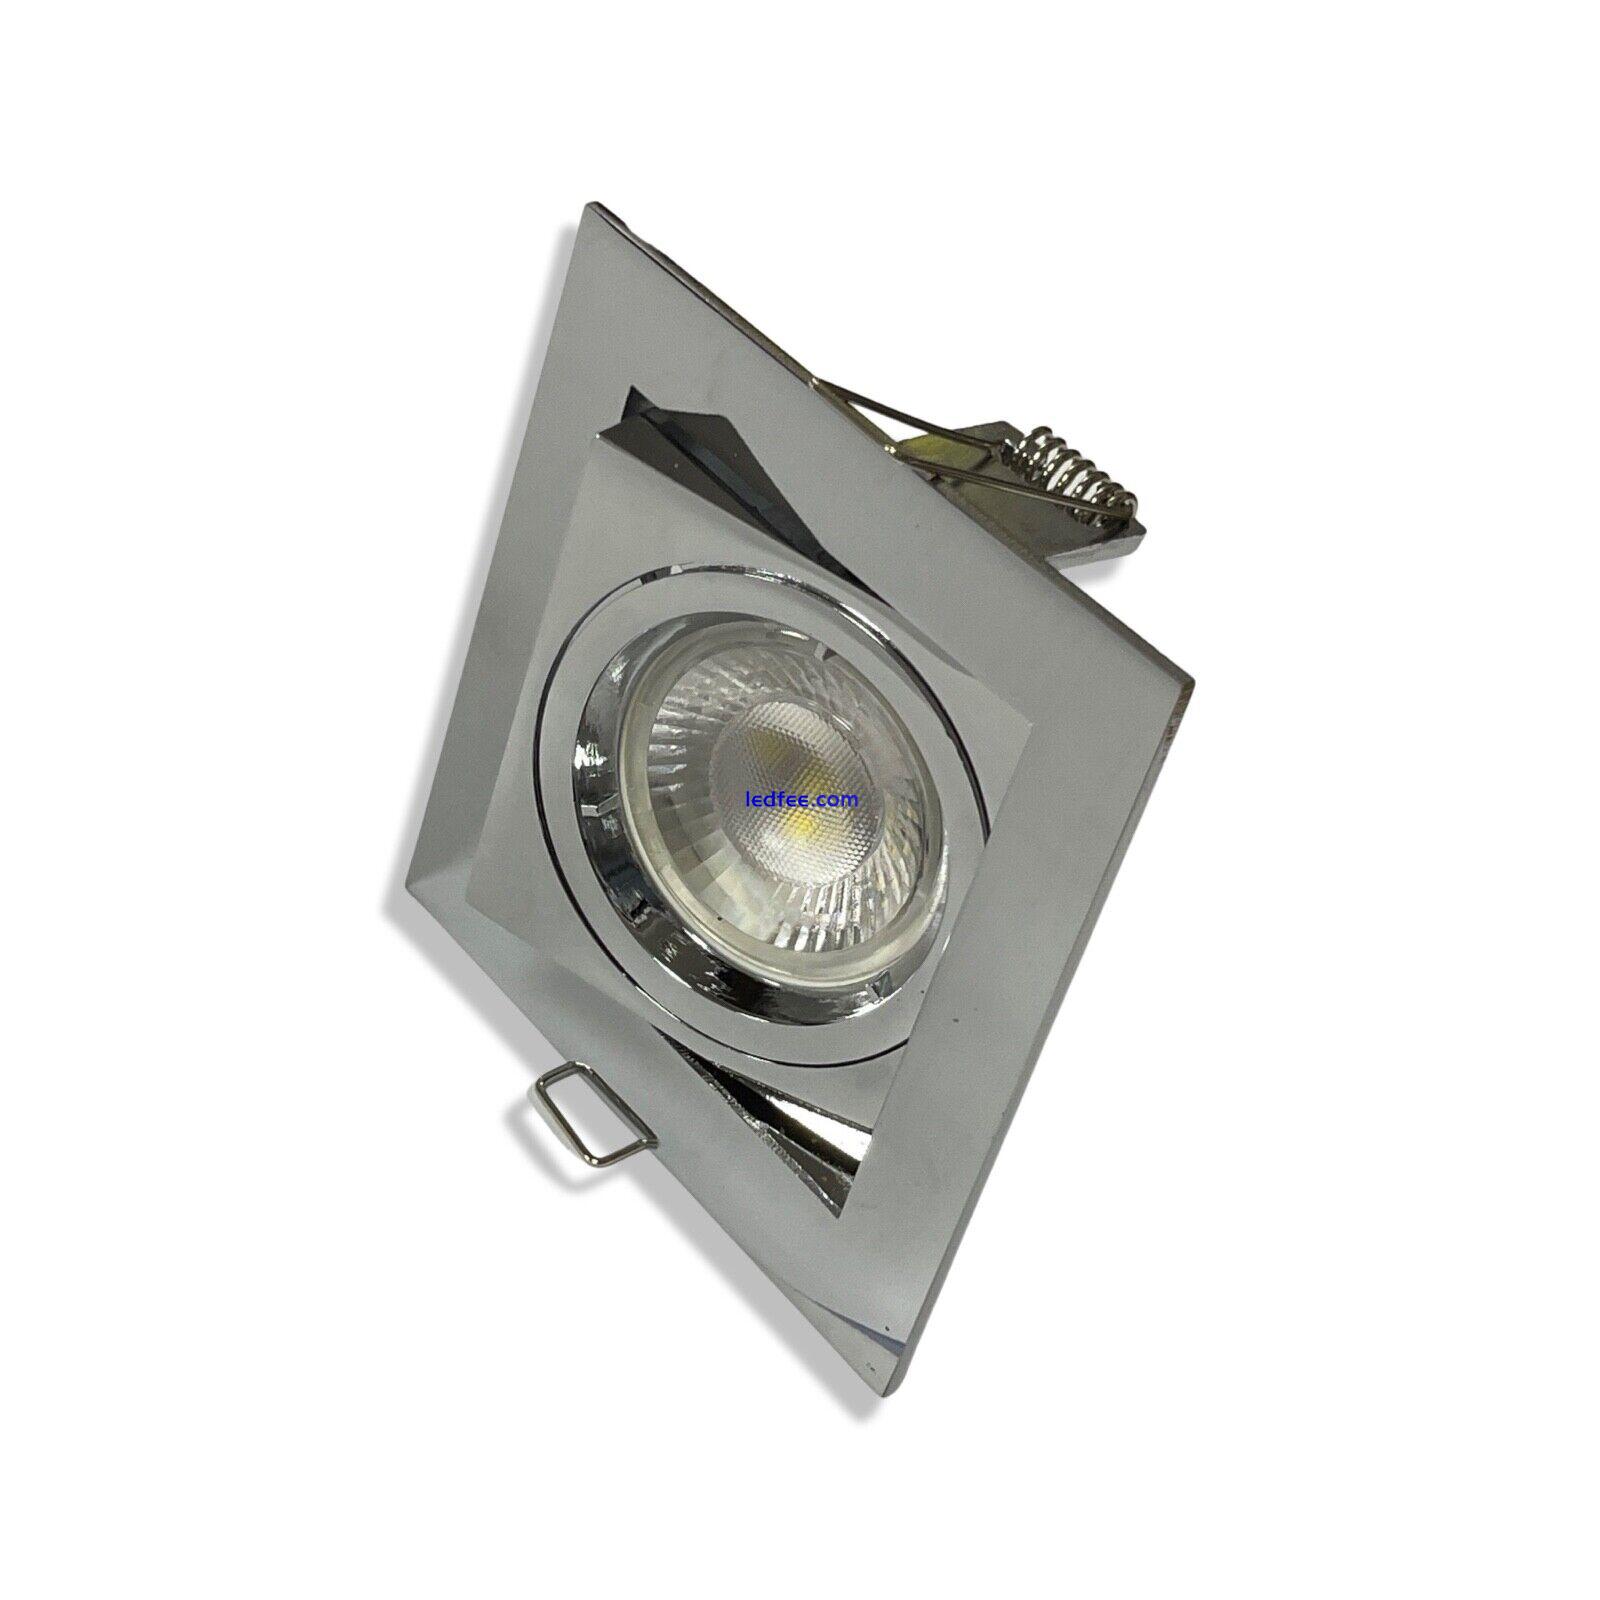 Chrome  GU10 Square Tilt Ceiling Spotlight Recessed Downlight Light LED 2 